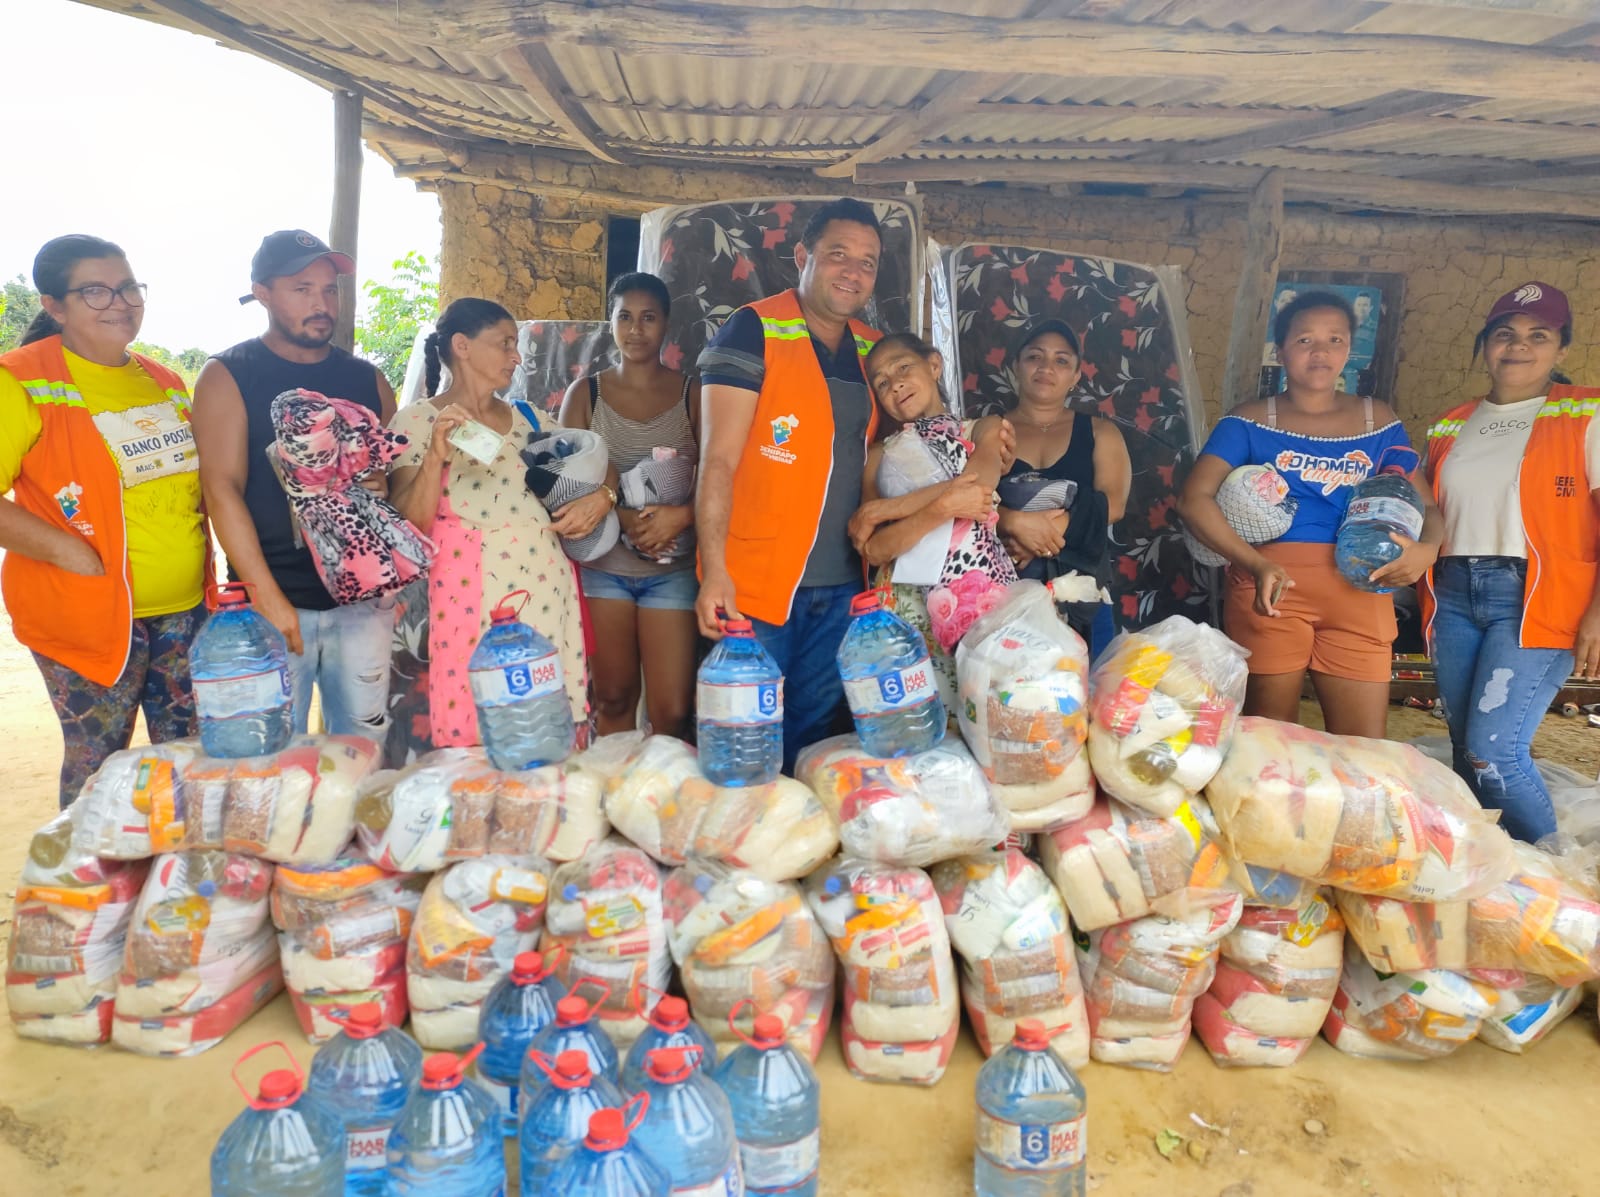 Prefeitura Municipal de Jenipapo dos Vieiras e Coordenação de Defesa Civil realizam ação humanitária durante o fim de semana